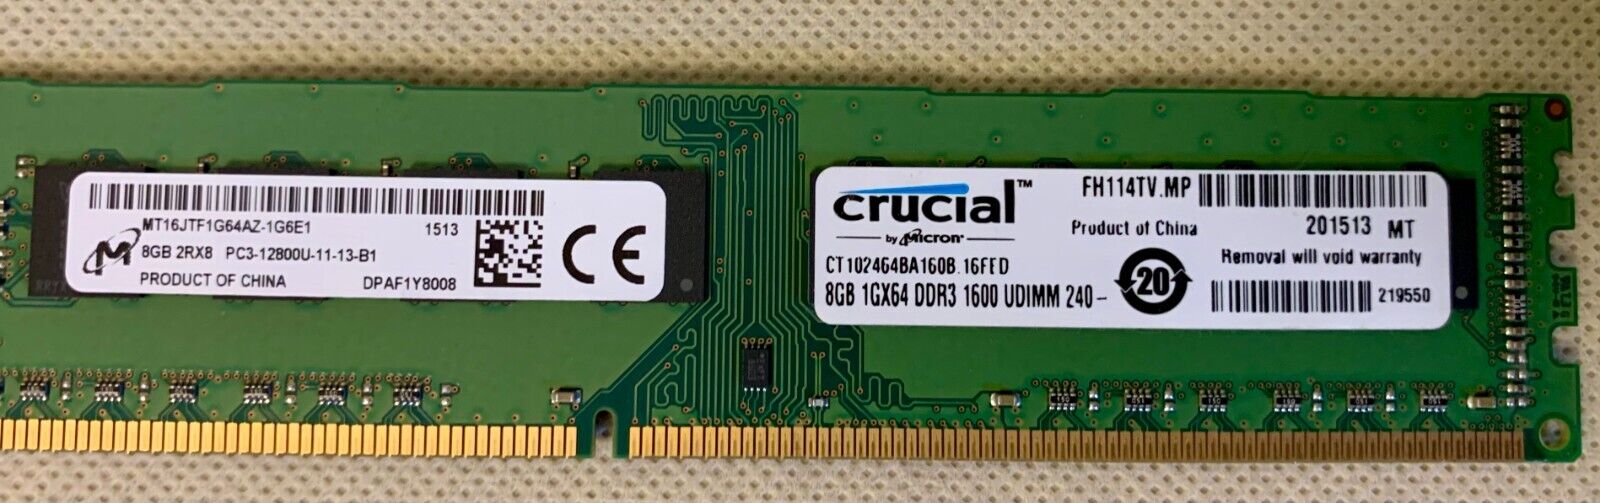 Crucial 8GB (1x8GB) 1600MHz 240-pin UDIMM DDR3 RAM Module